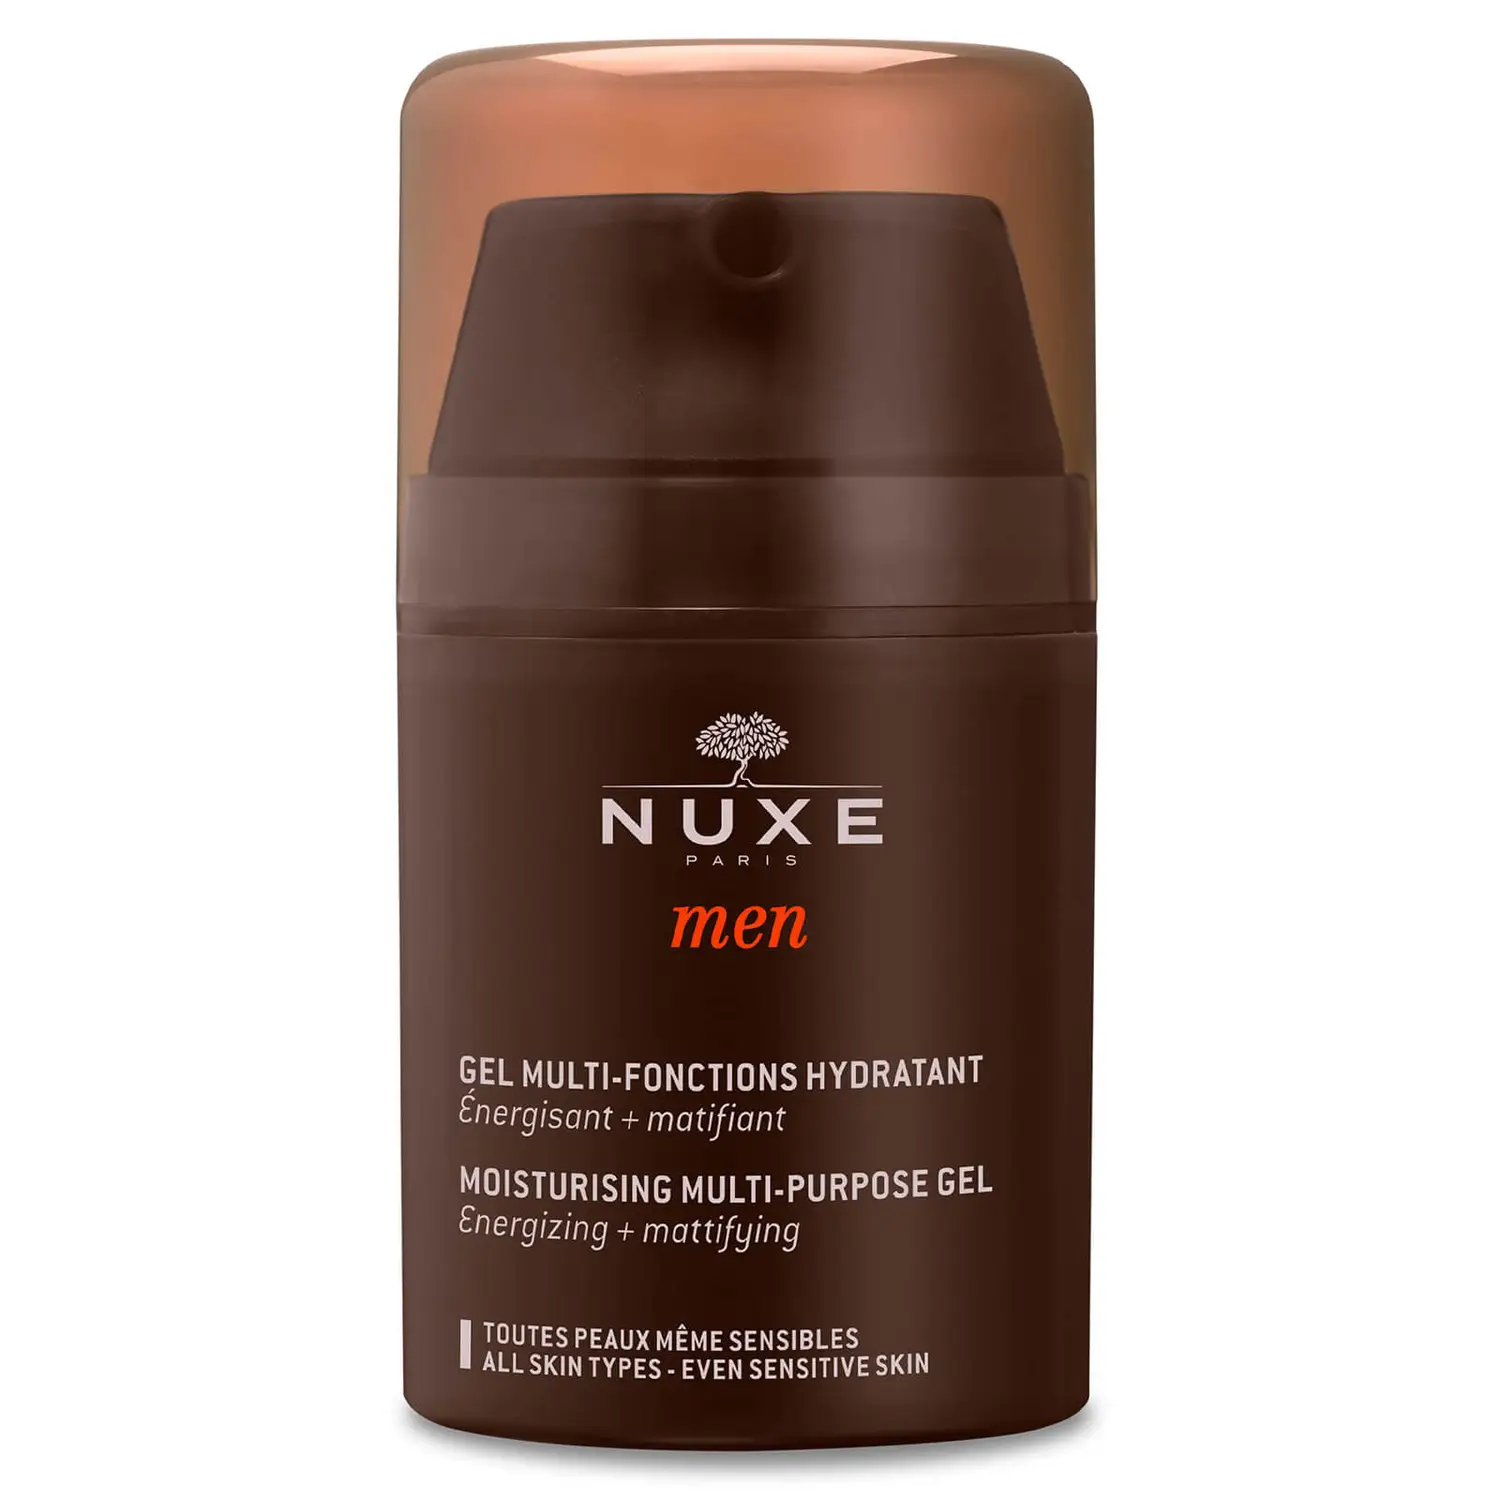 NUXE MEN Gel multi-funciones hidratante, NUXE Men 50 ml. Tratamiento facial hidratante Hombre - energizante, matificante. Todos los tipos de piel, incluso las sensibles.